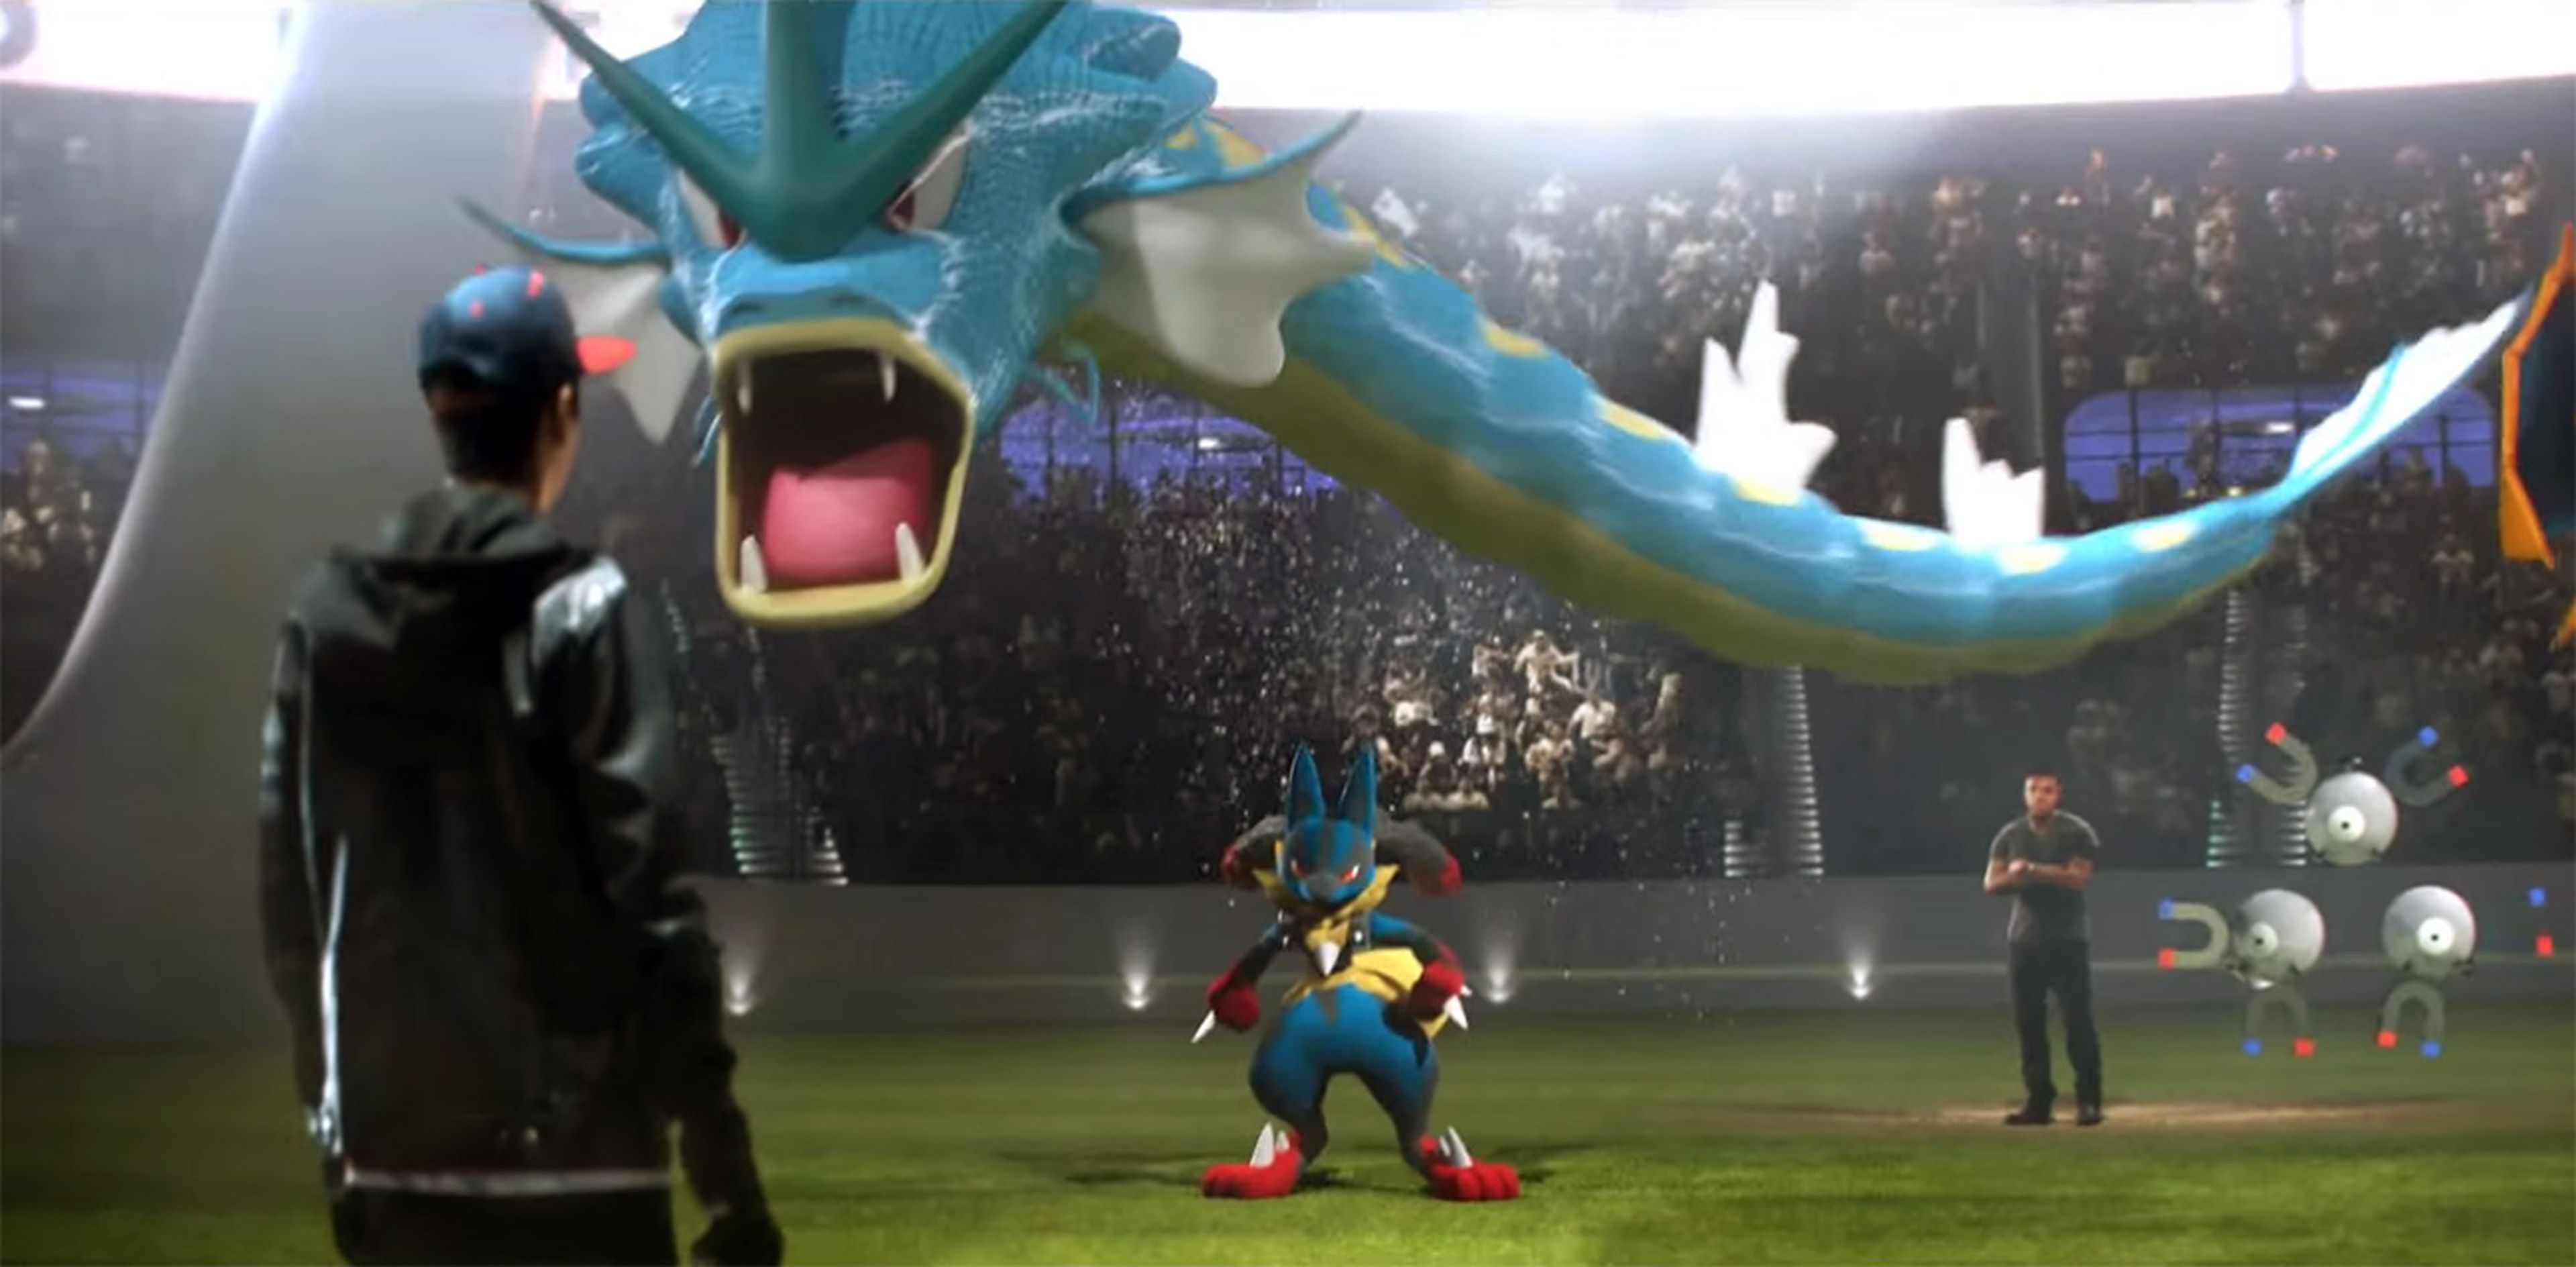 Pokémon - Todas las referencias ocultas en el anuncio de la Super Bowl